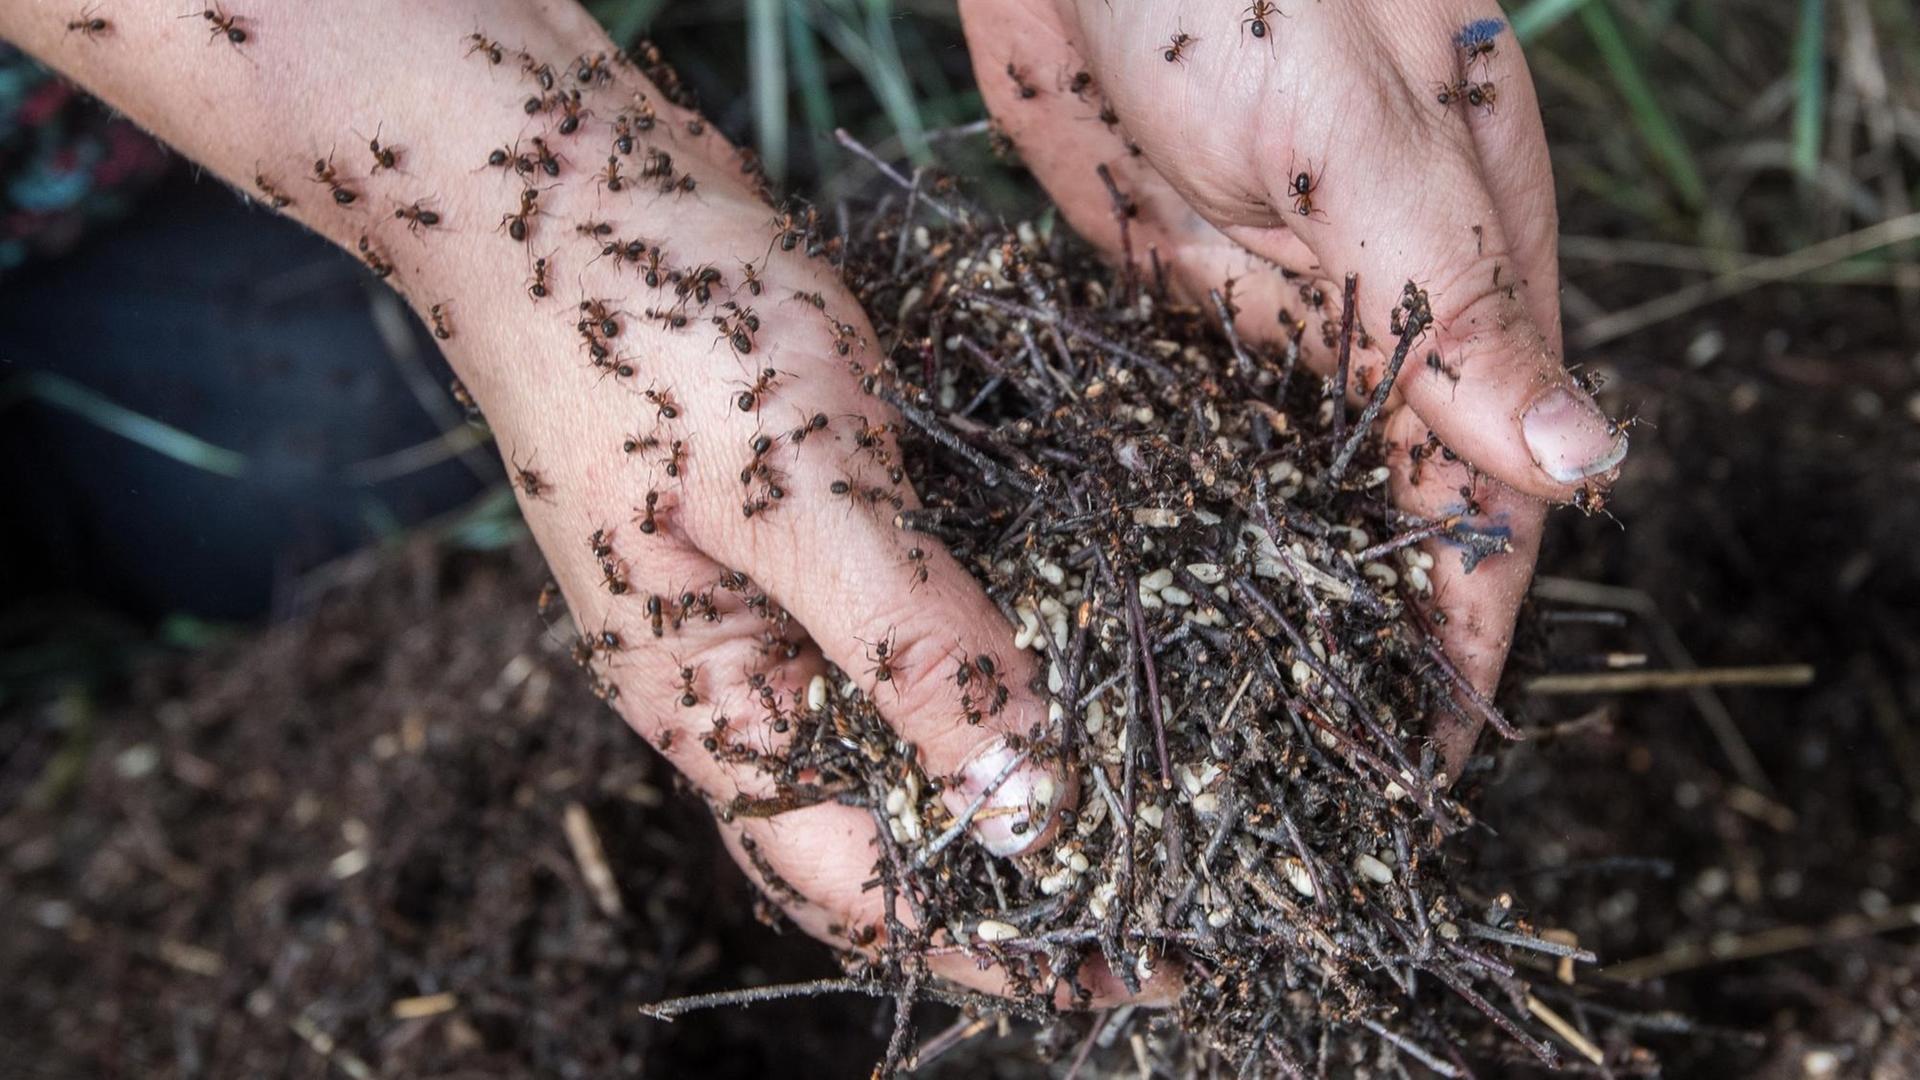 Nur mit ihren Händen hebt die Diplom-Biologin Christina Grätz in einem Wald nahe Birkenwerder ein Ameisenvolk hoch.